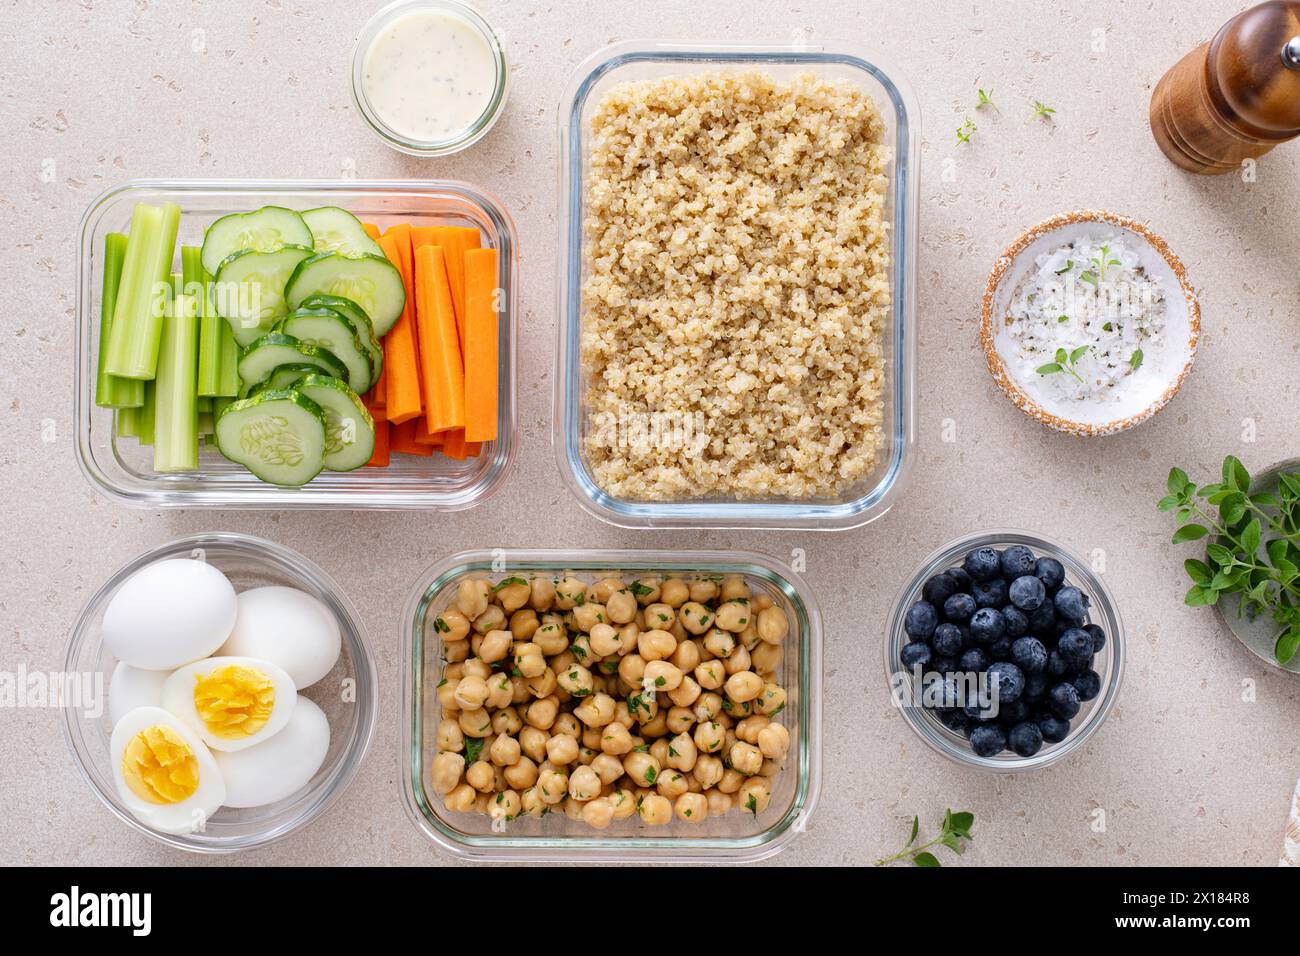 Récipients de préparation de repas avec des aliments végétariens sains préparés, quinoa cuit, pois chiches et œufs Banque D'Images